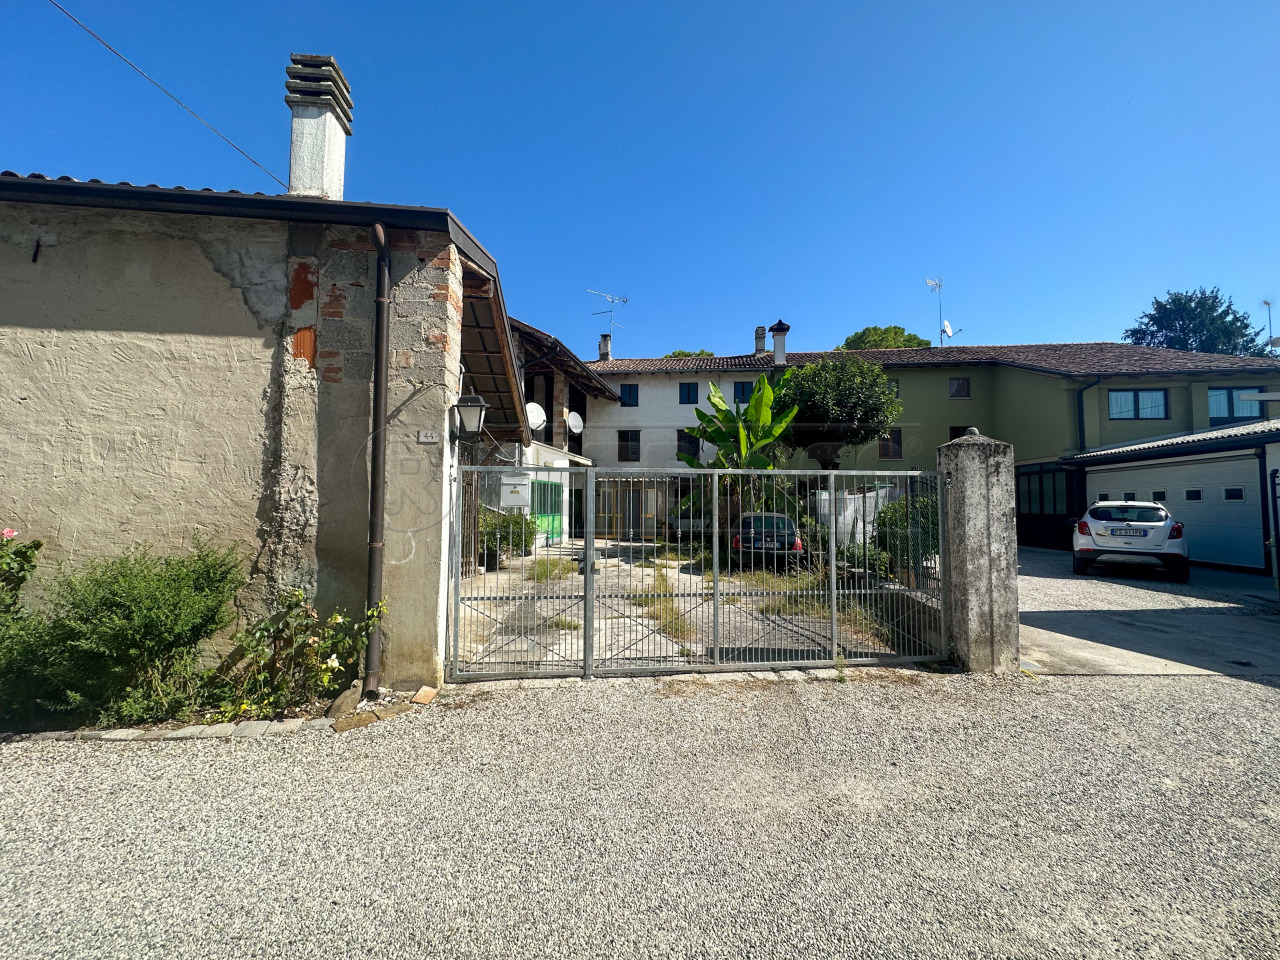 Rustico / Casale in vendita a San Vito al Torre, 8 locali, prezzo € 127.000 | PortaleAgenzieImmobiliari.it